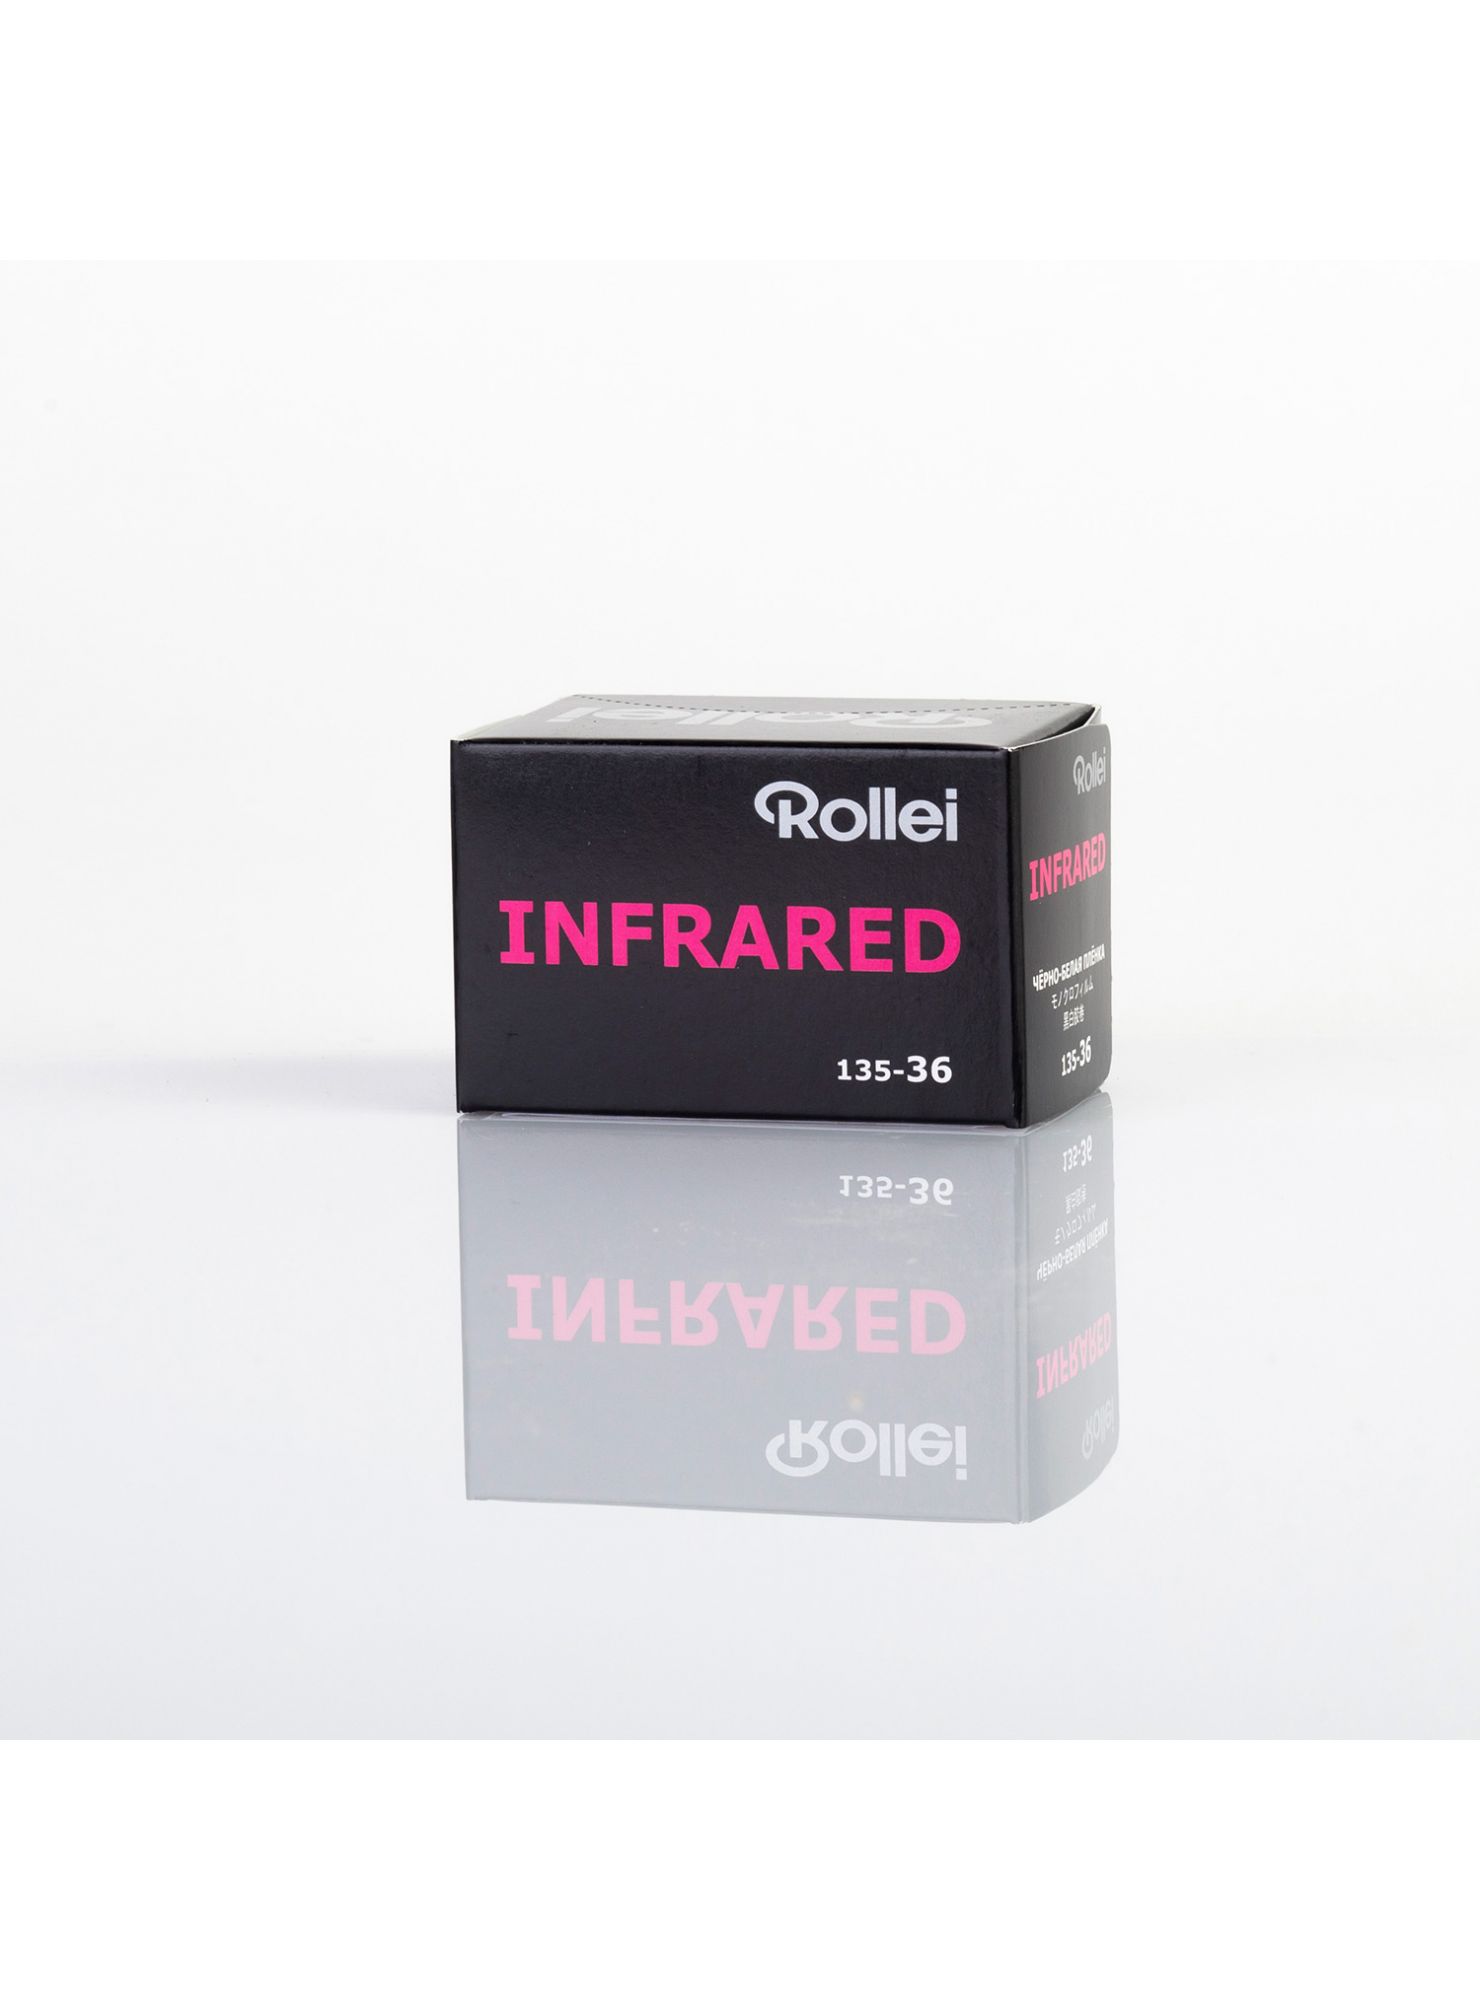 Rollei Infrared 400 - un film 135-36